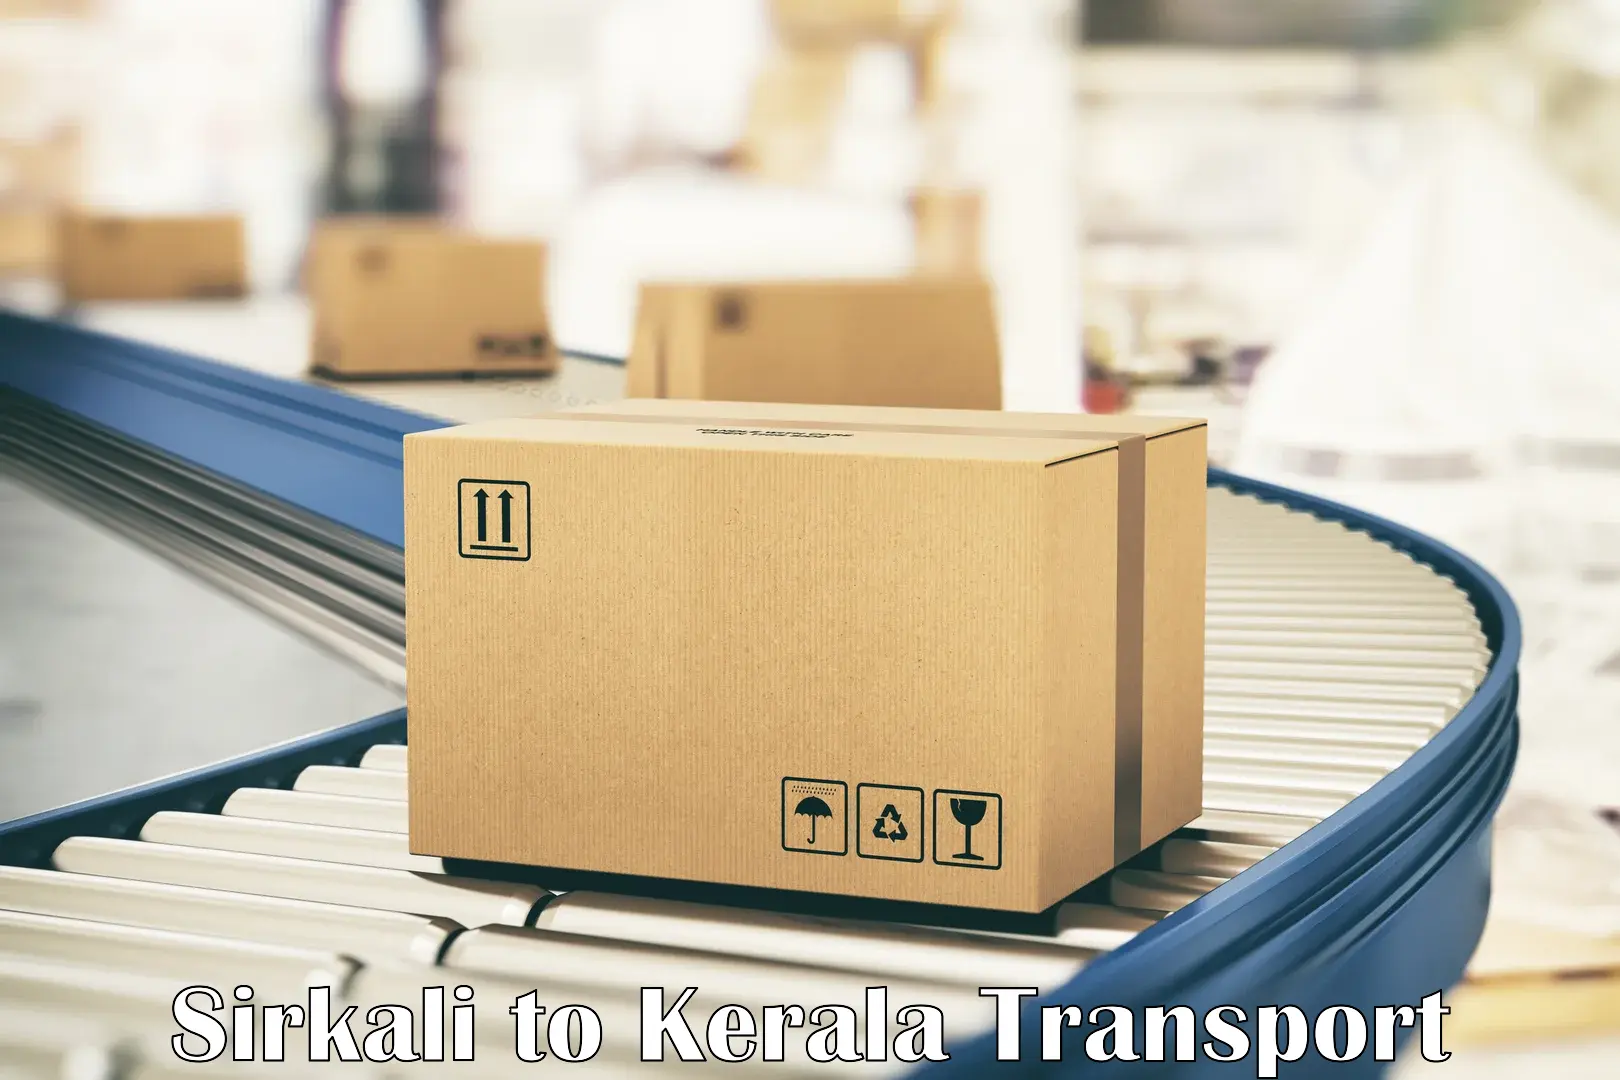 Transport in sharing Sirkali to Kattappana